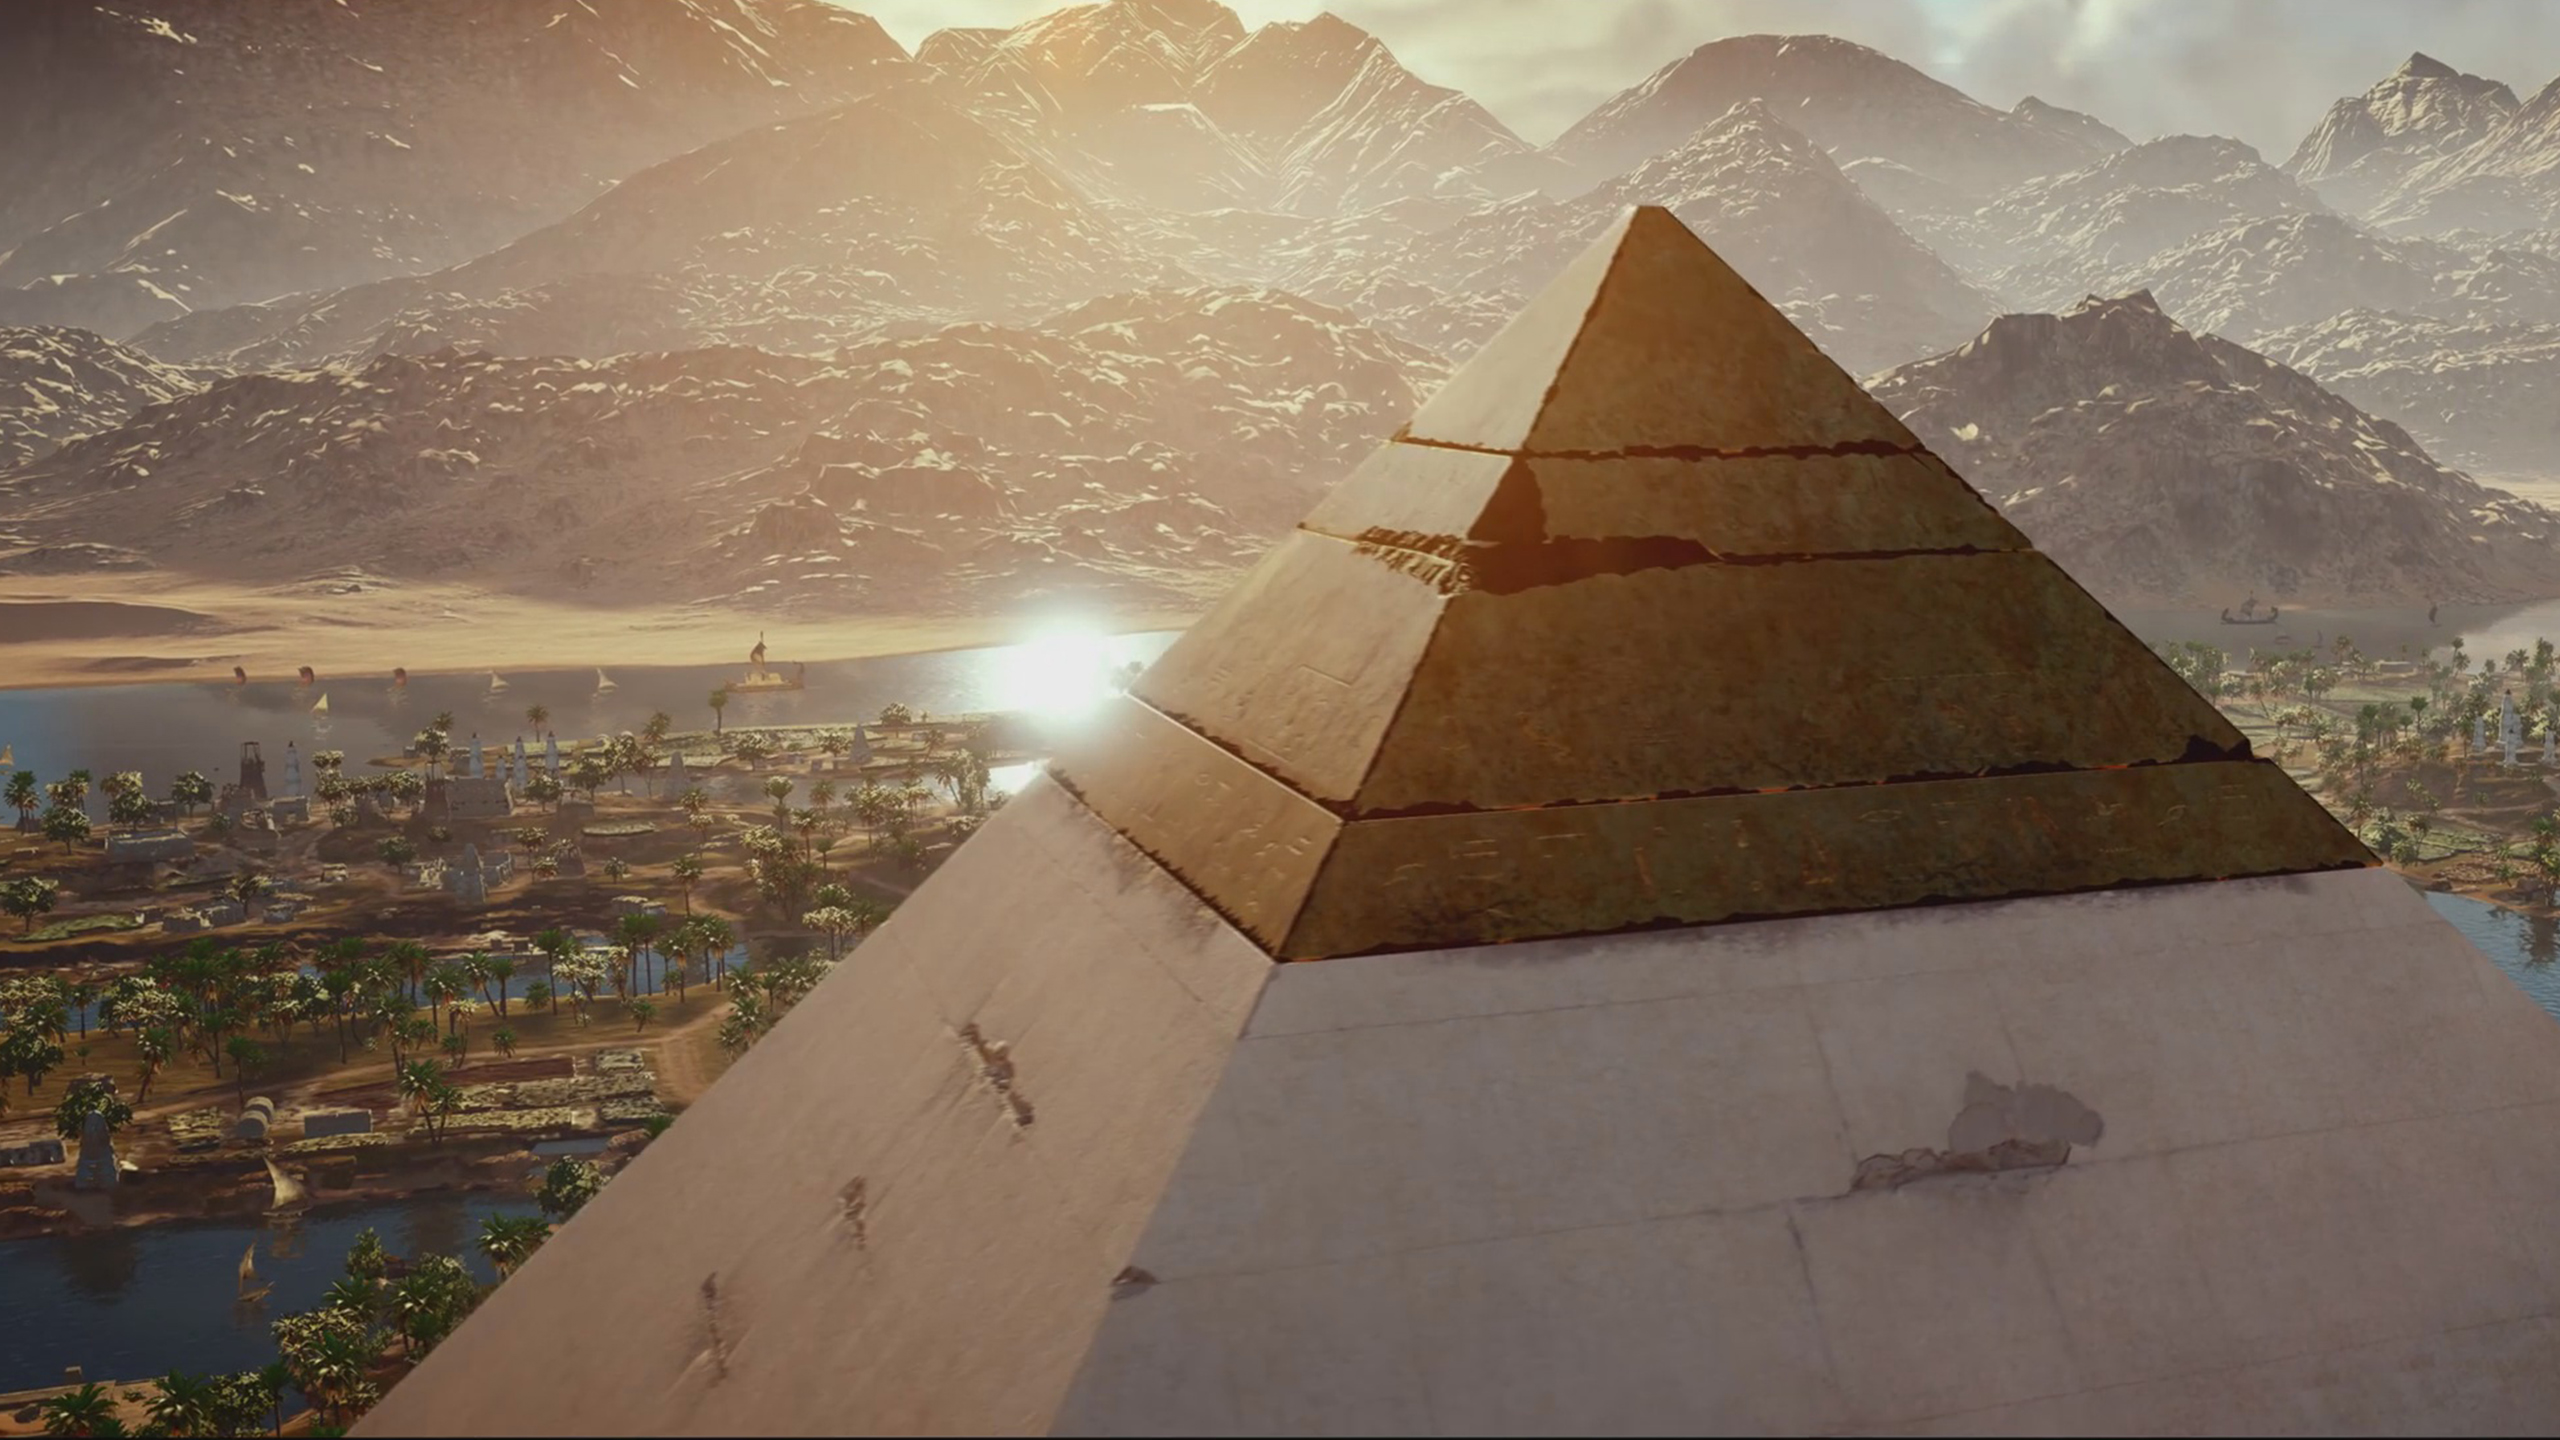 Descarga gratuita de fondo de pantalla para móvil de Ciudad, Montaña, Pirámide, Videojuego, Assassin's Creed, Assassin's Creed: Origins.